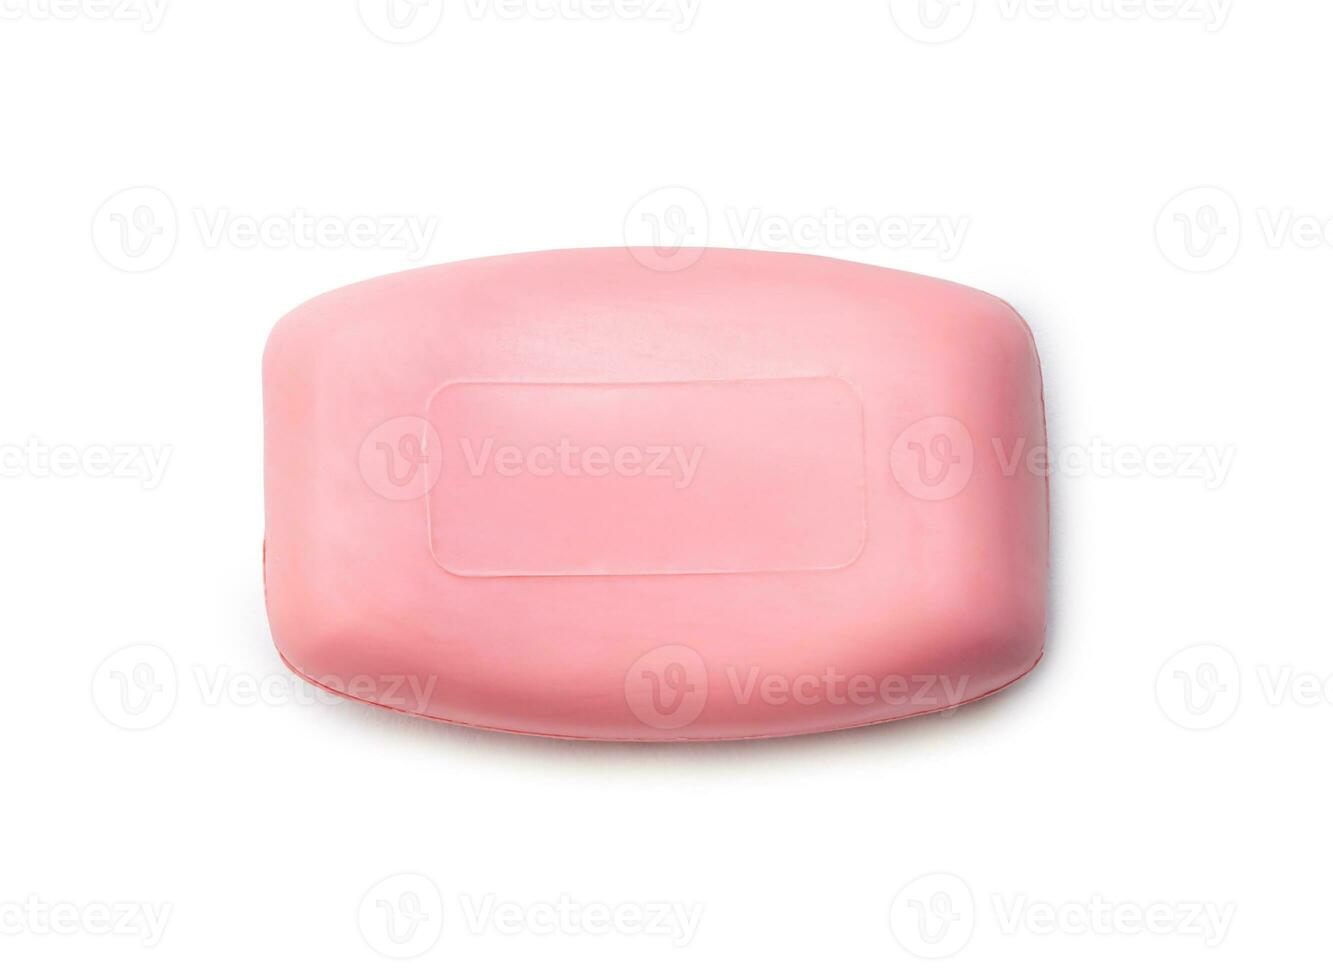 enda torr rosa tvål bar isolerat på vit bakgrund med klippning väg foto